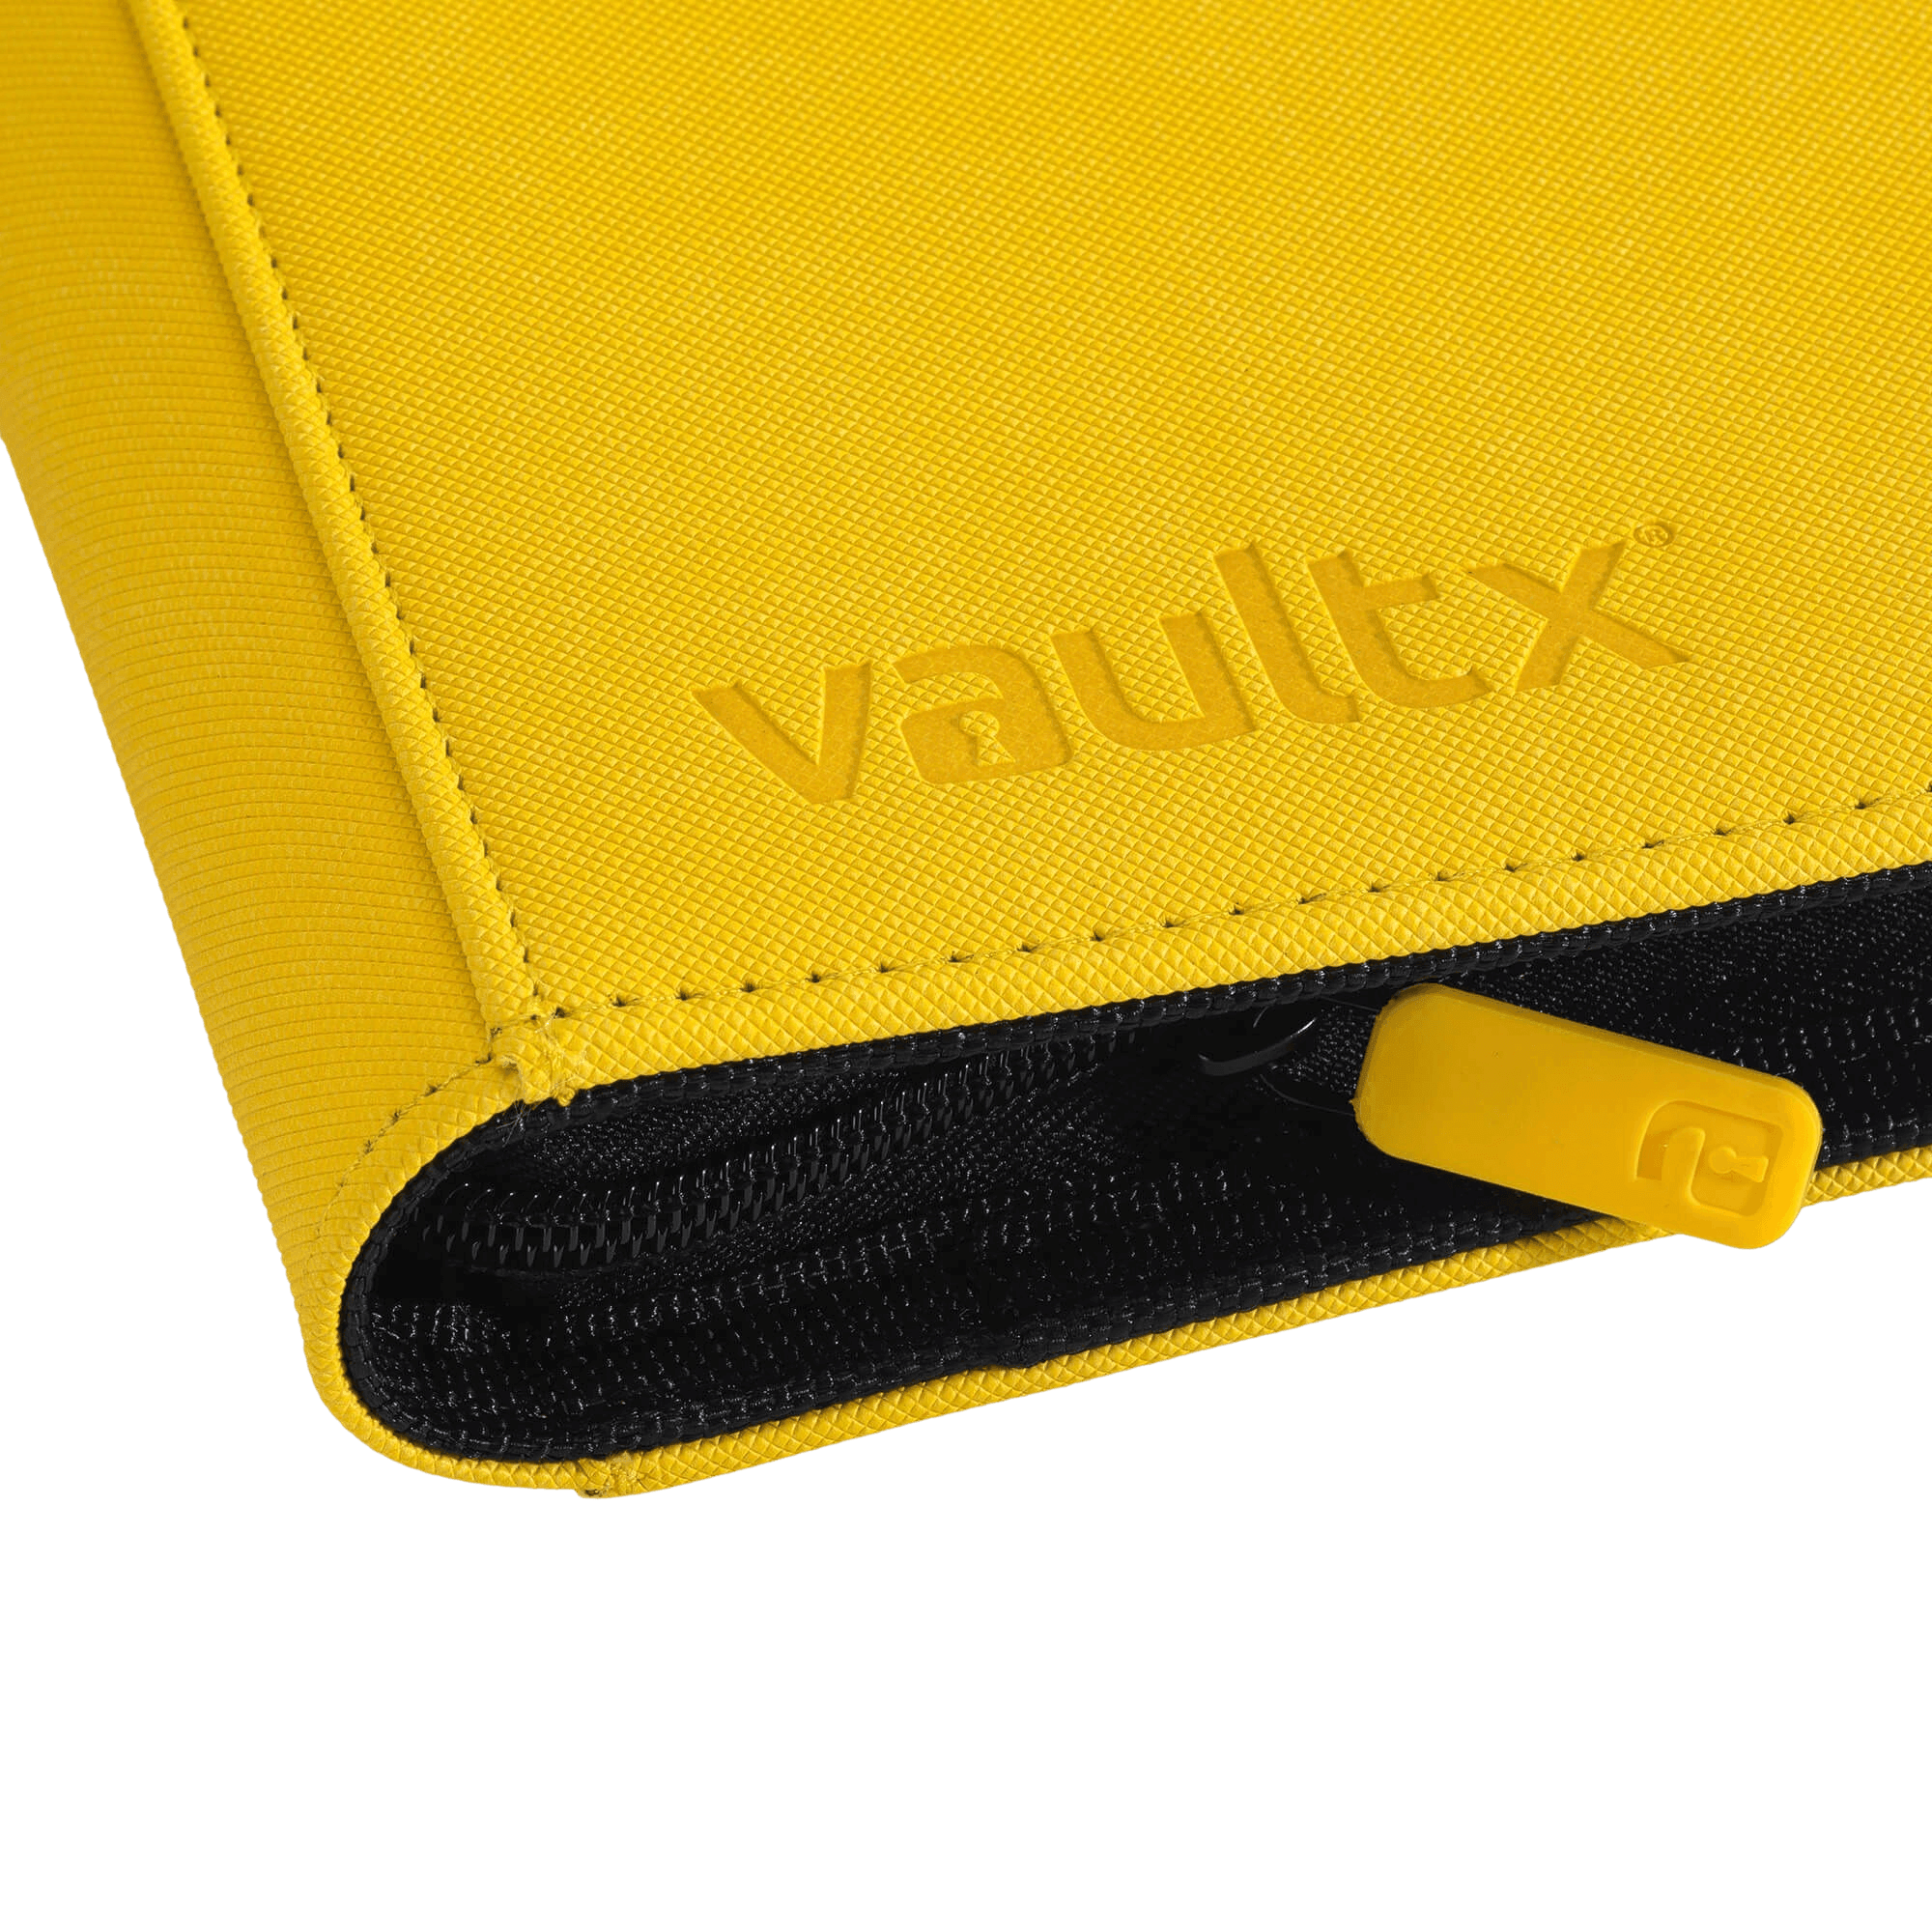 Vault X 4-Pocket Exo-Tec® Zip Binder - Yellow - The Card Vault